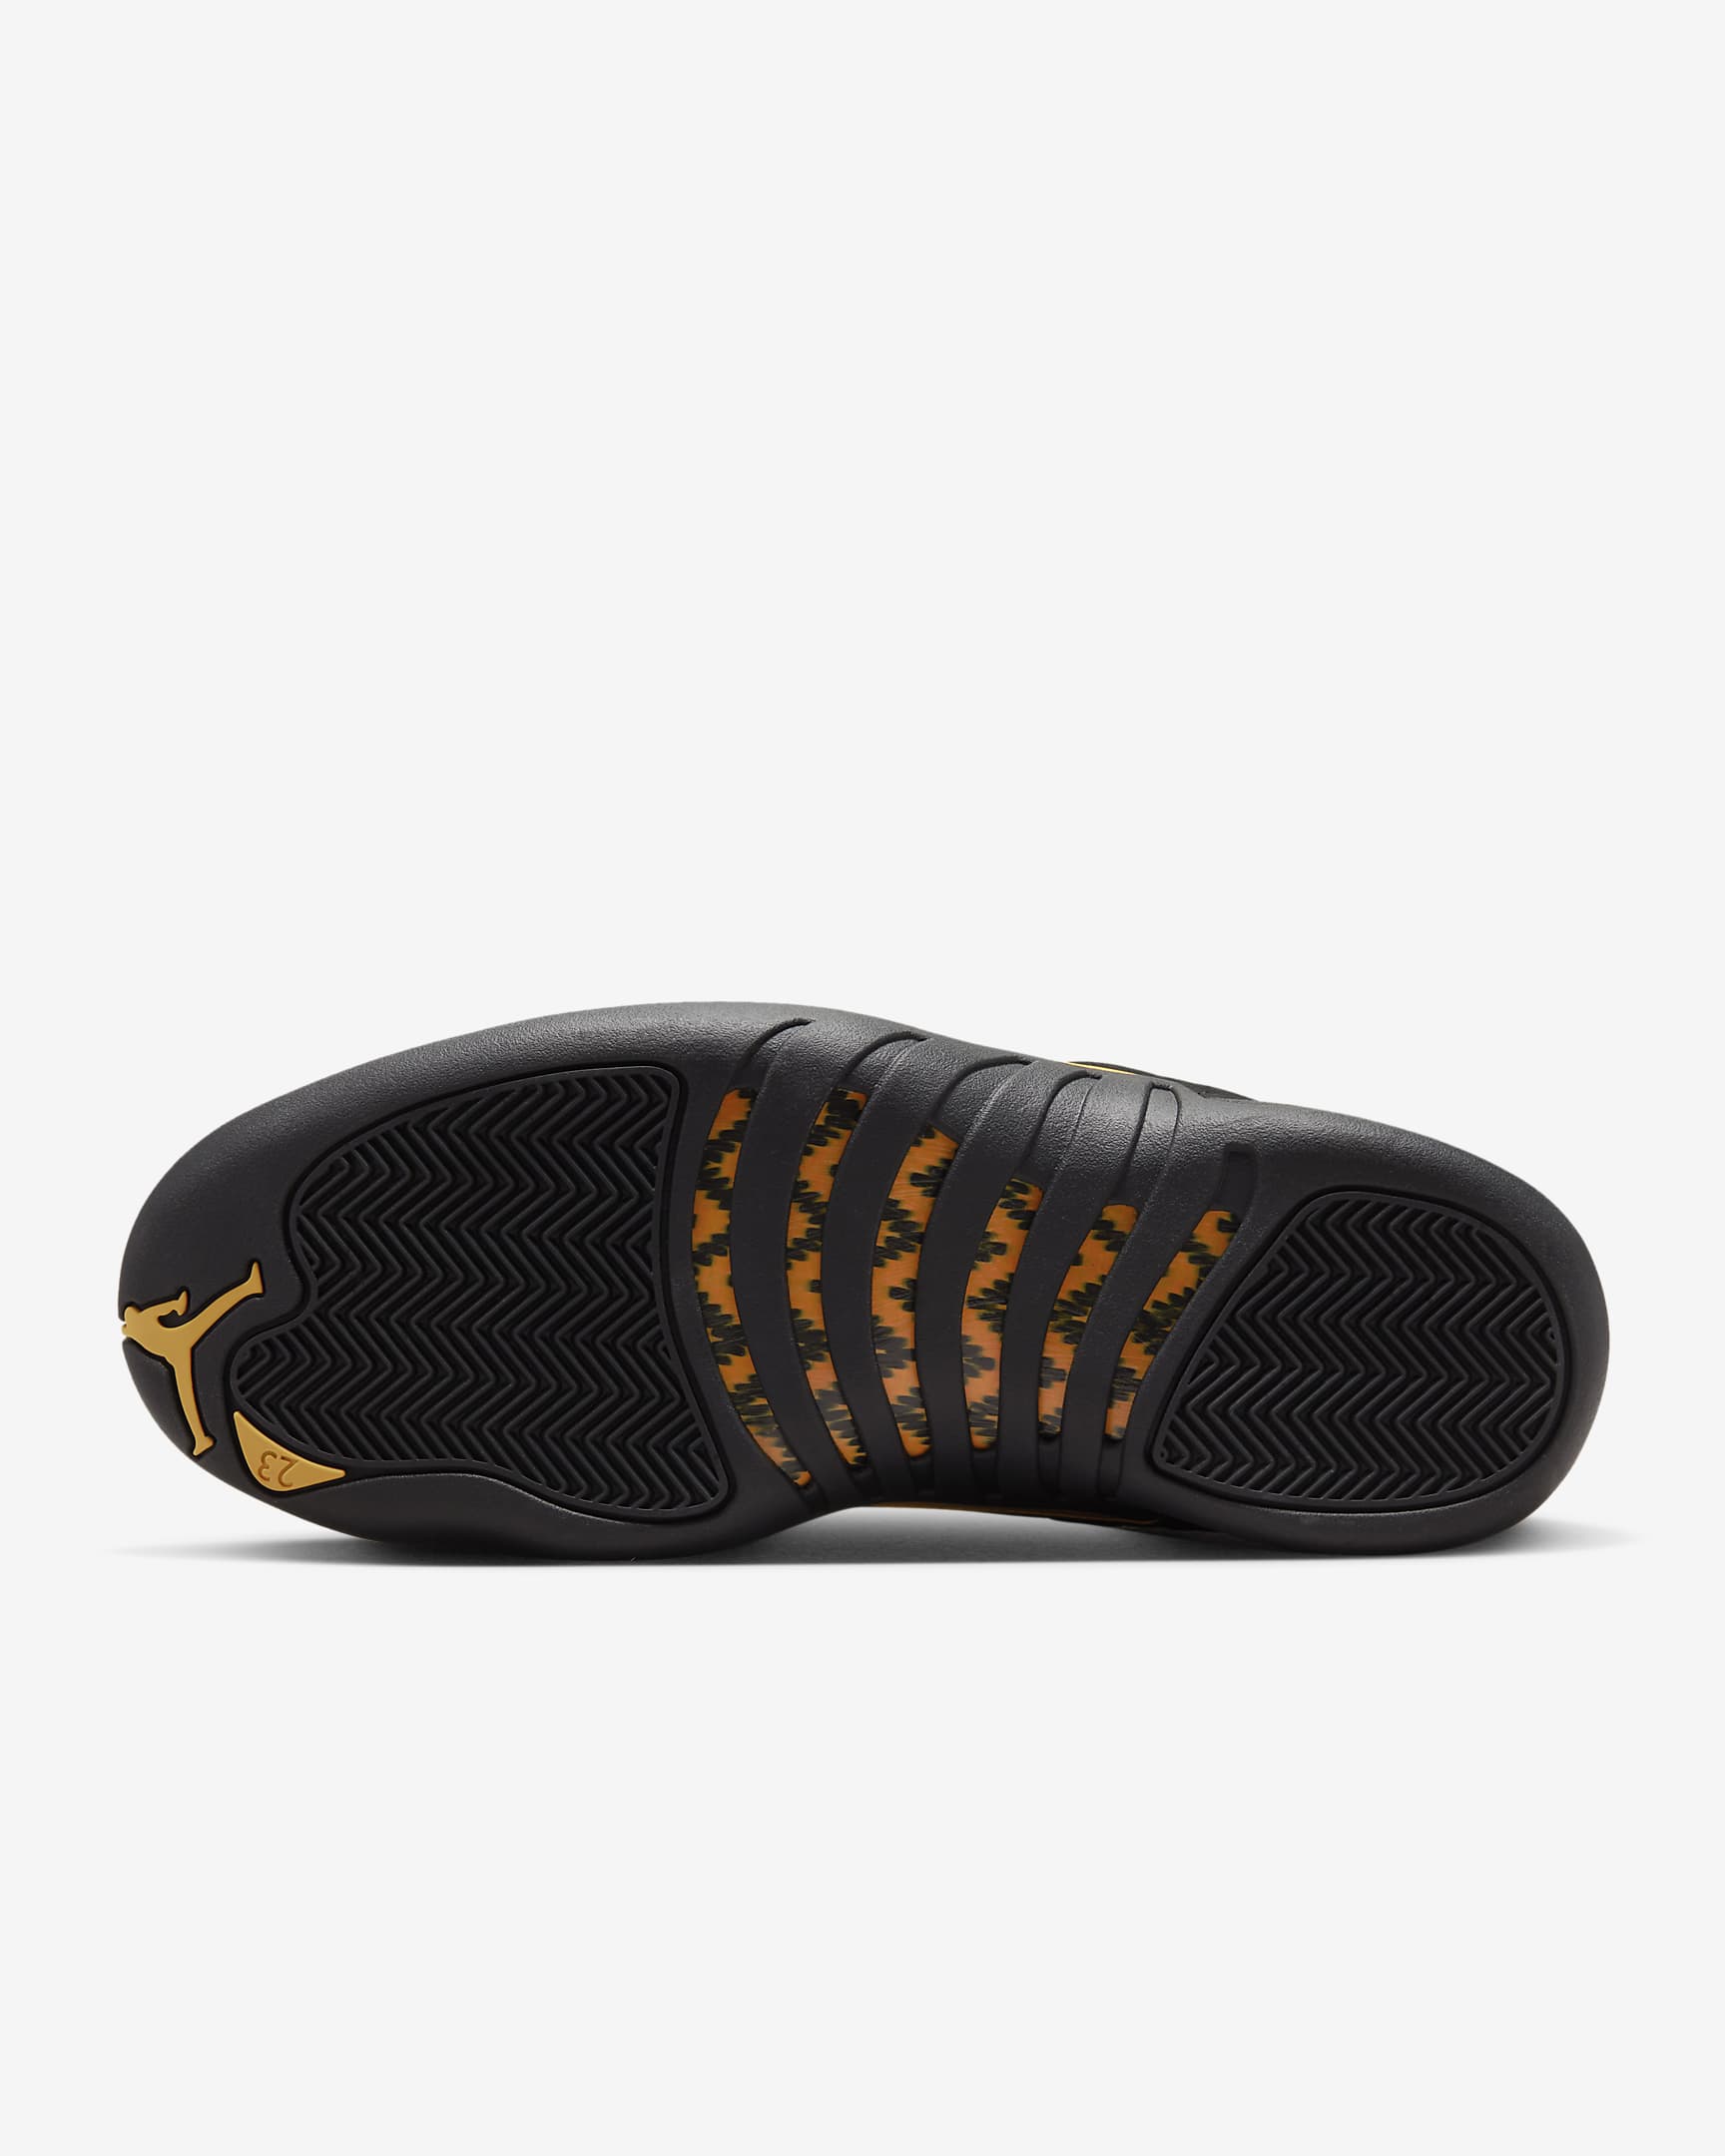 Air Jordan 12 Retro Men's Shoes. Nike LU